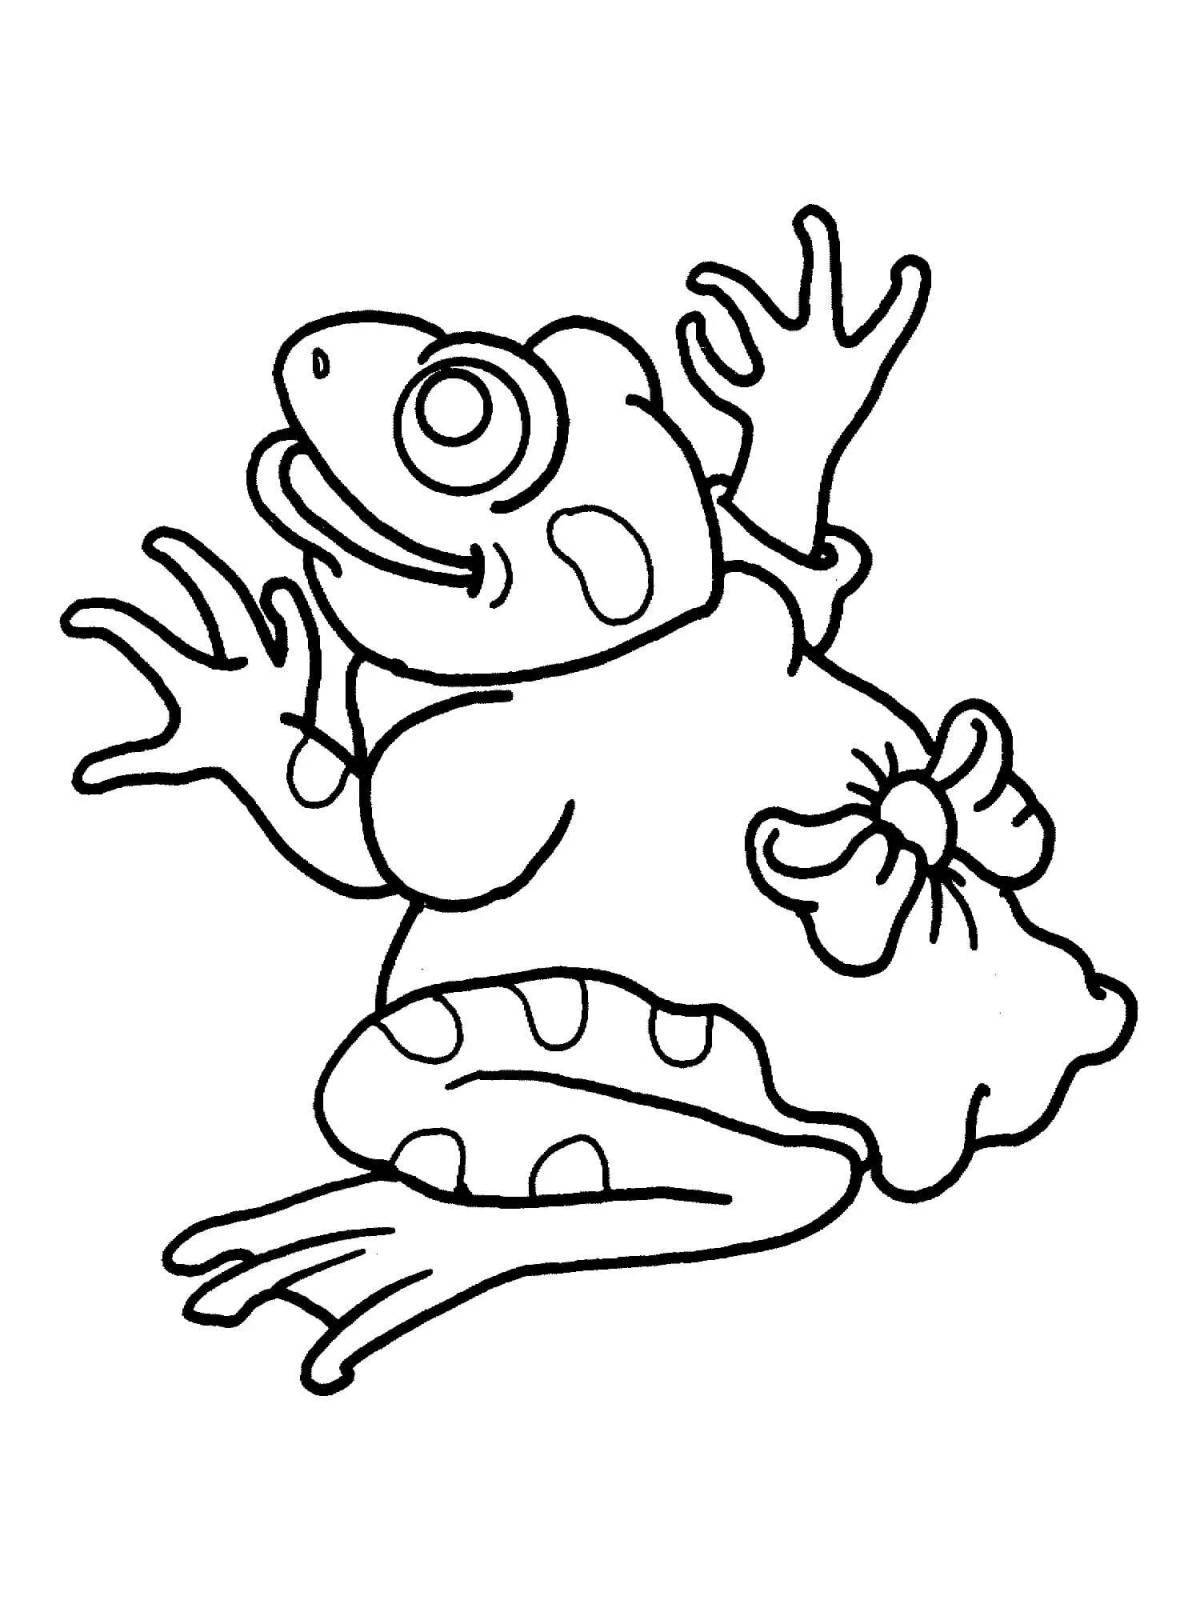 Пикантная раскраска милой лягушки с грибком на голове